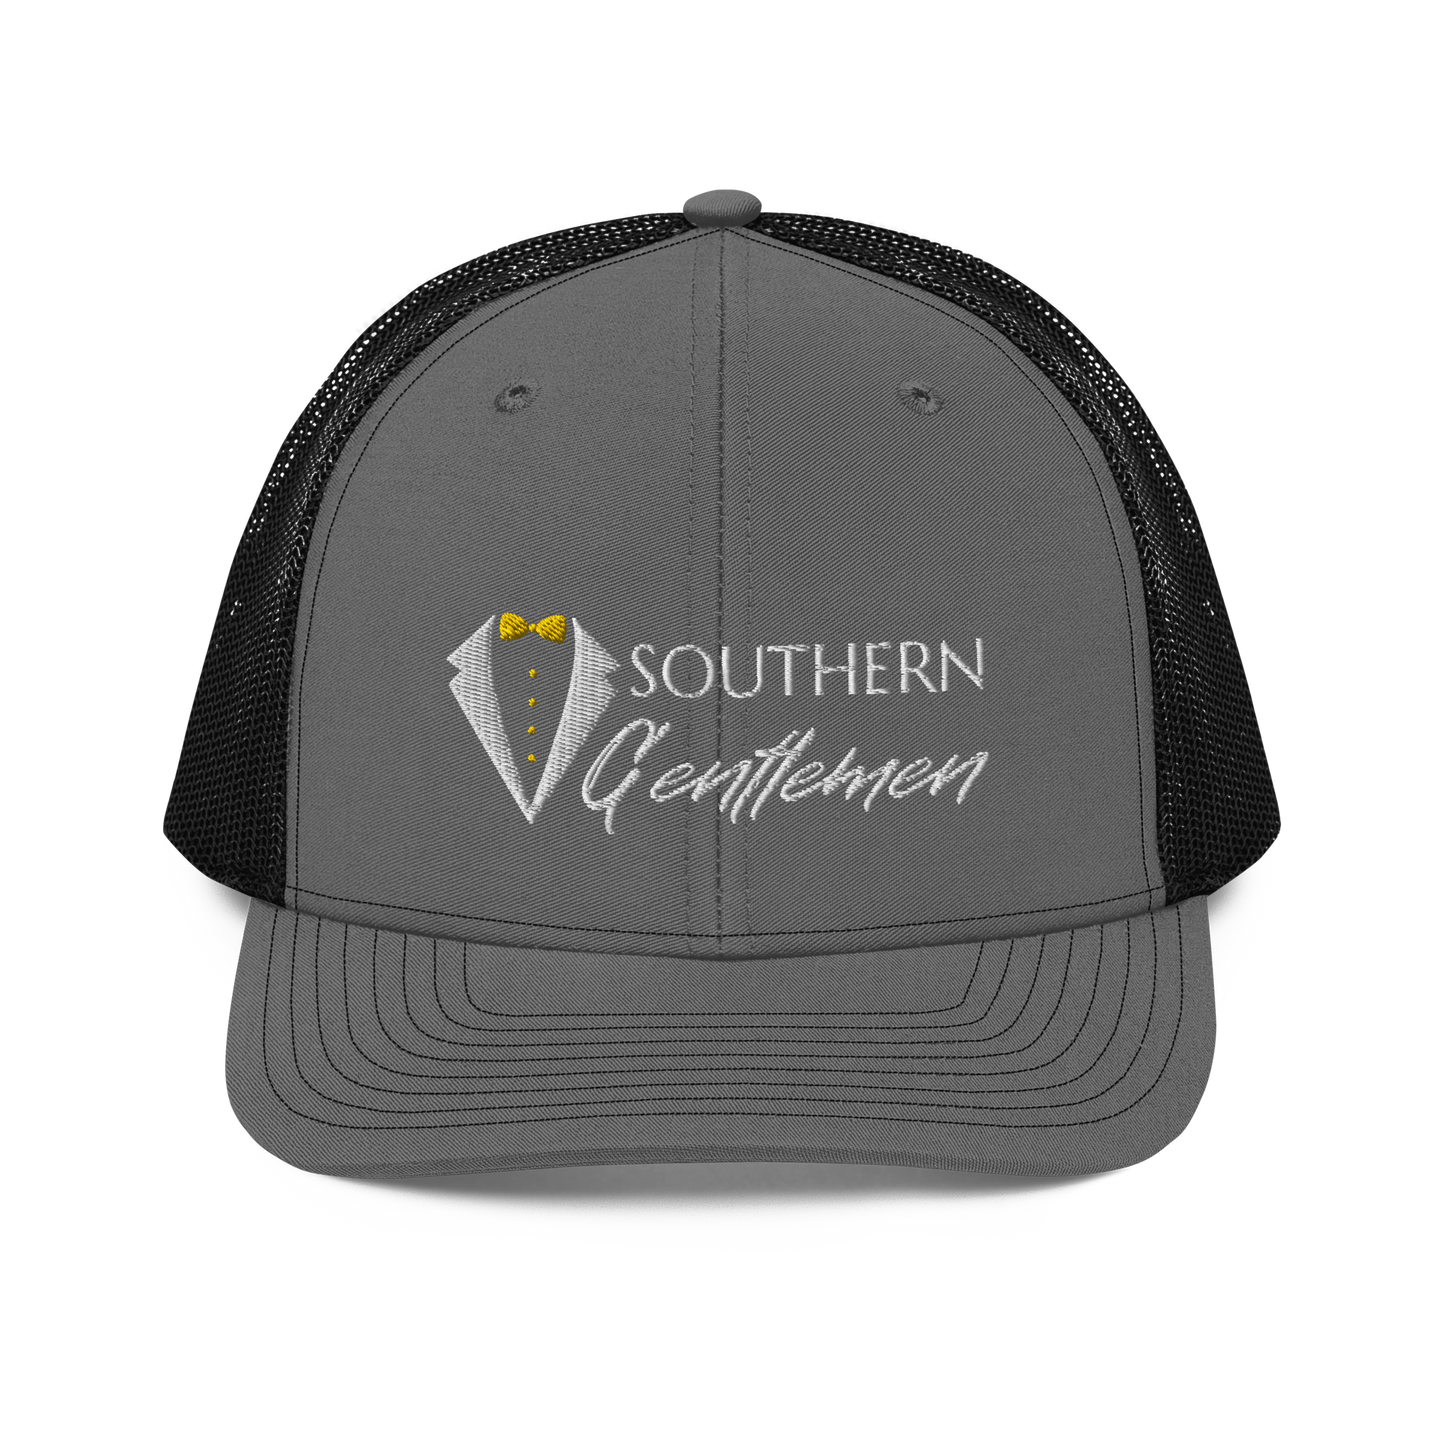 Southern Gentlemen Trucker Cap